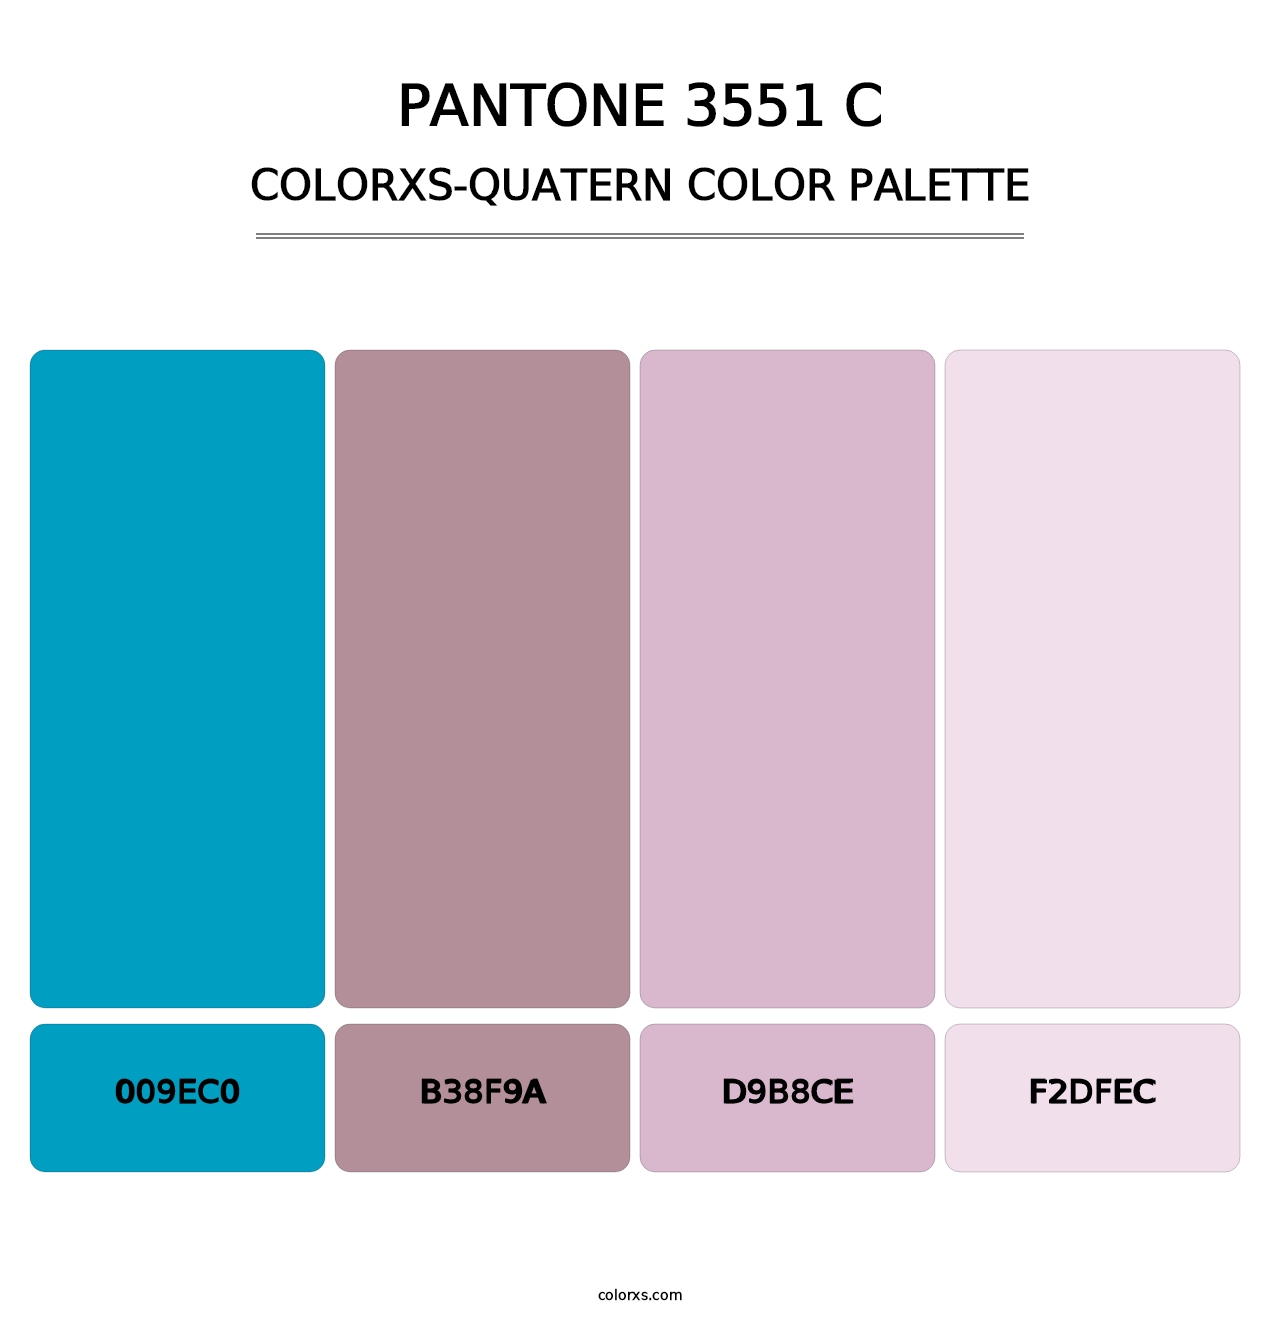 PANTONE 3551 C - Colorxs Quatern Palette